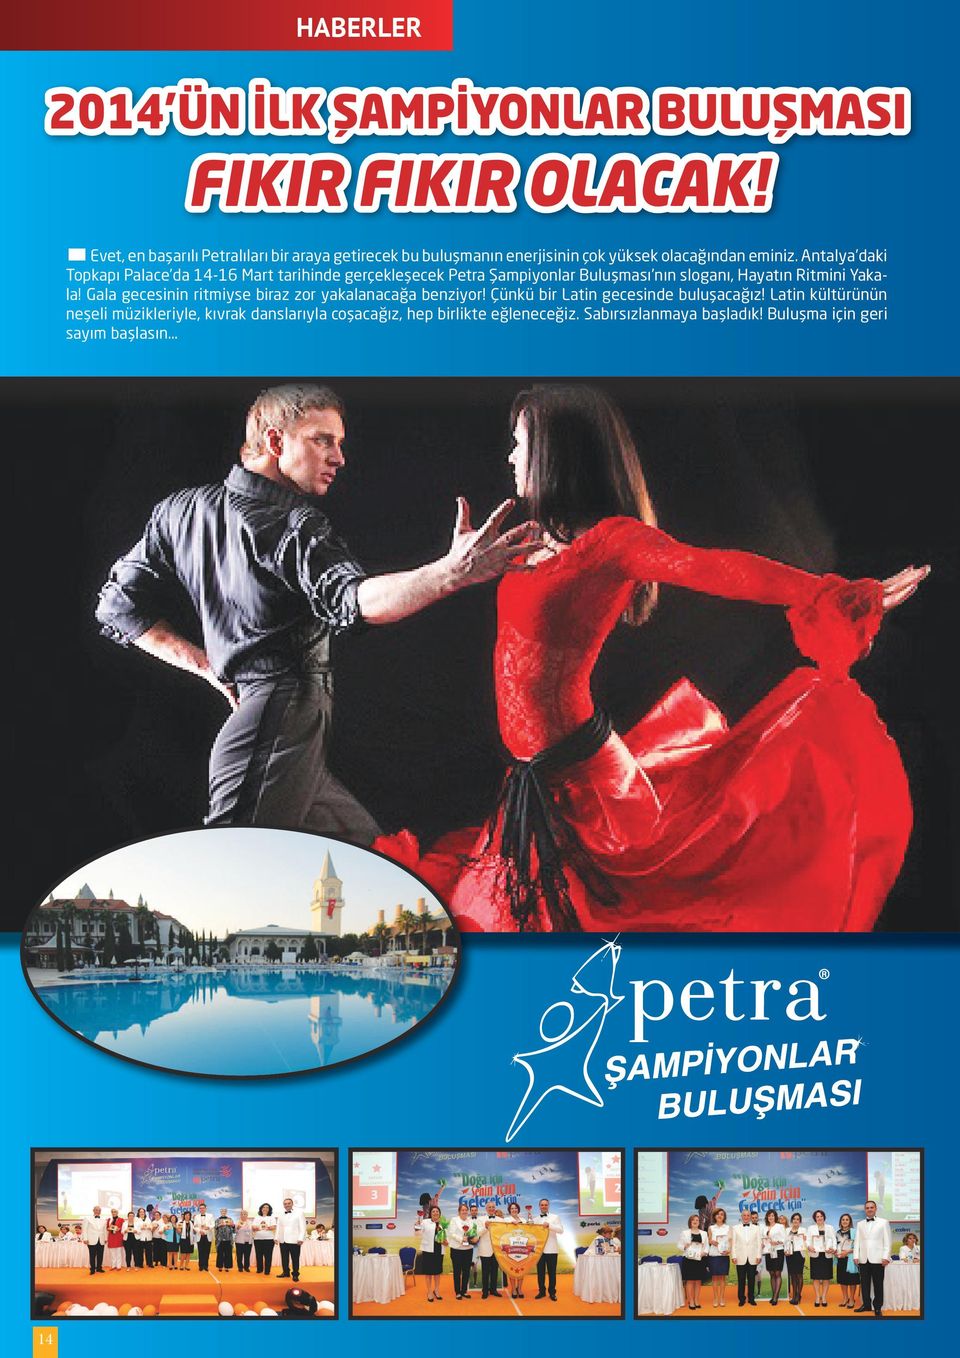 Antalya daki Topkapı Palace da 14-16 Mart tarihinde gerçekleşecek Petra Şampiyonlar Buluşması nın sloganı, Hayatın Ritmini Yakala!